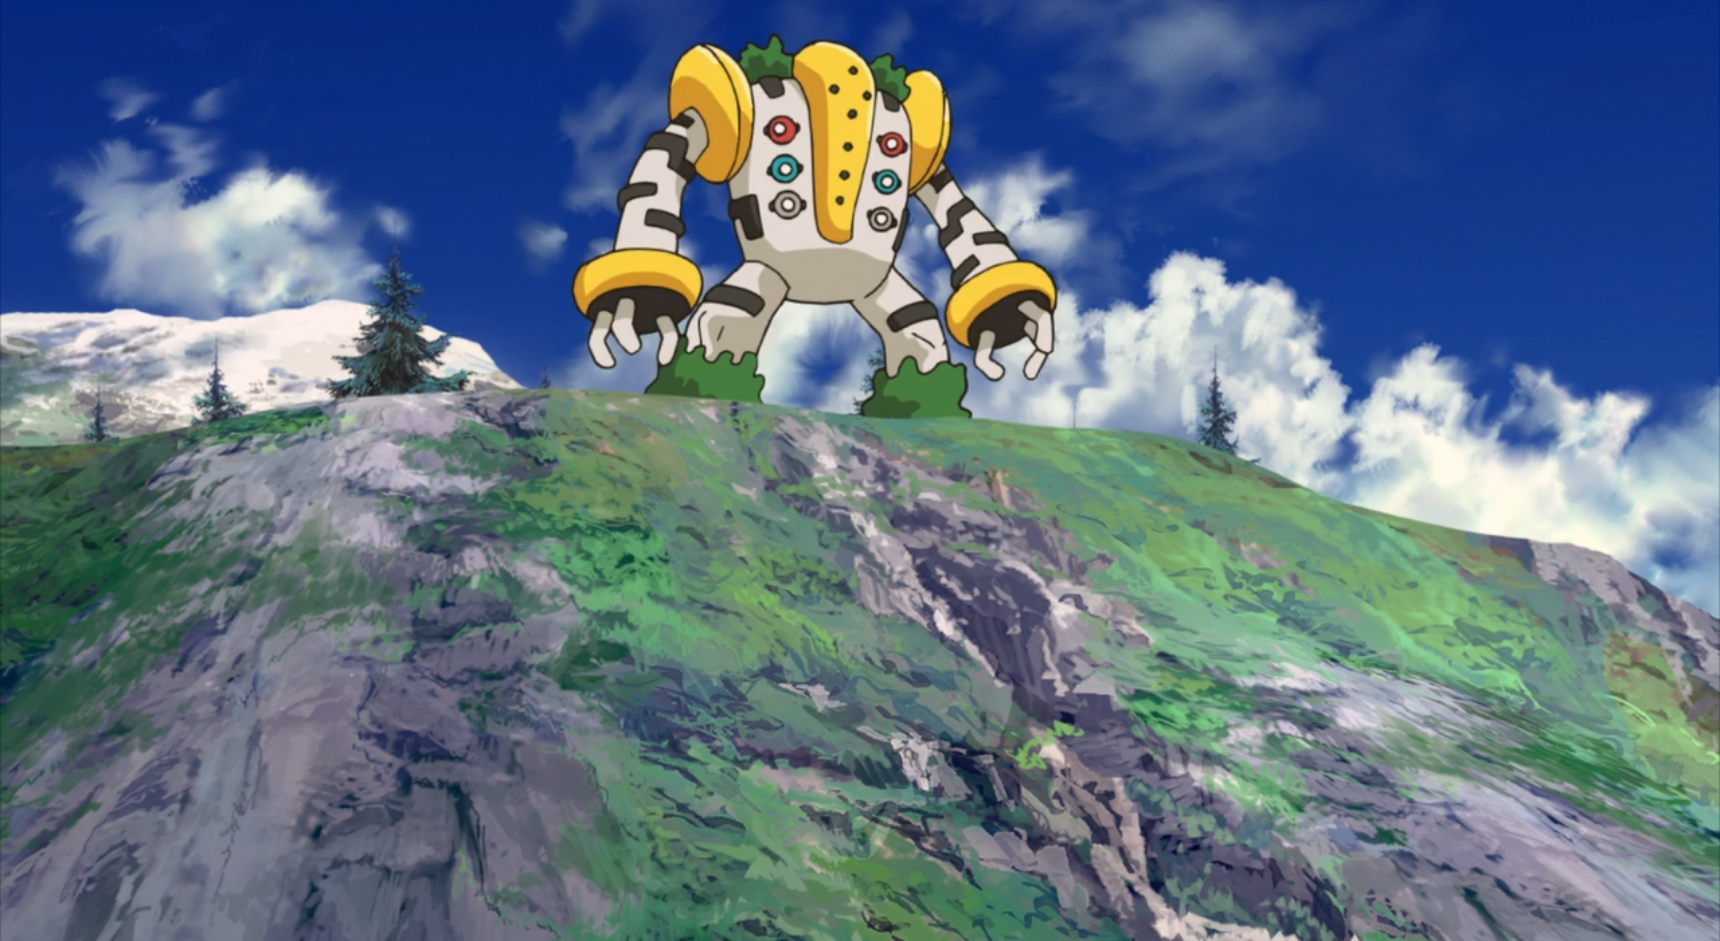 Regigigas Pokemon anime on mountain